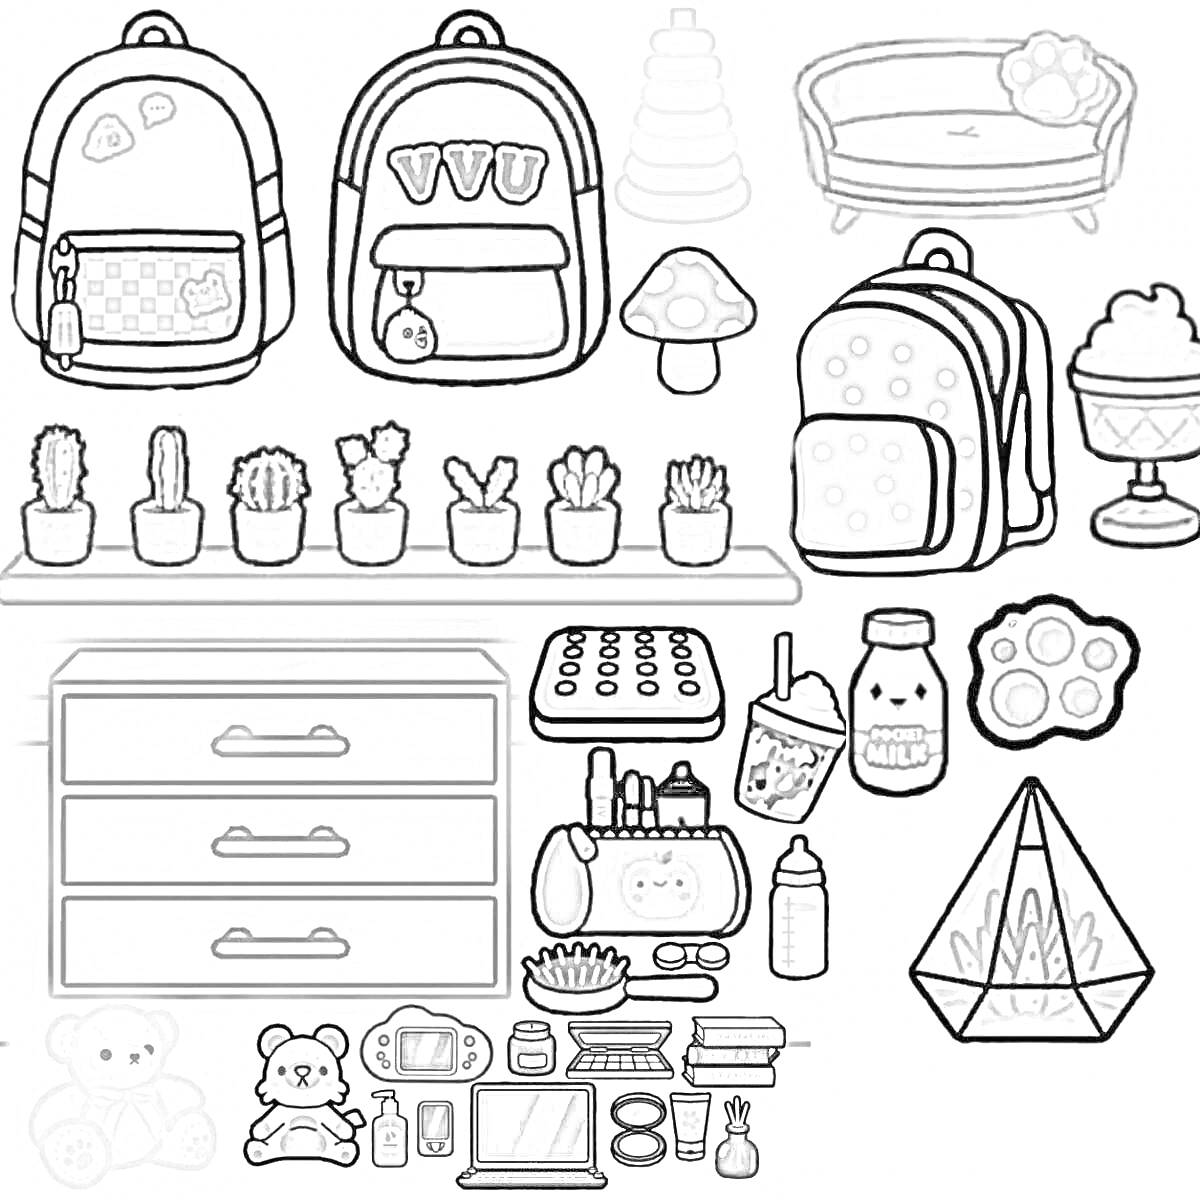 Персонажи из Toca Boca с домашними предметами: рюкзаки, кактусы, шезлонг, игрушки и аксессуары